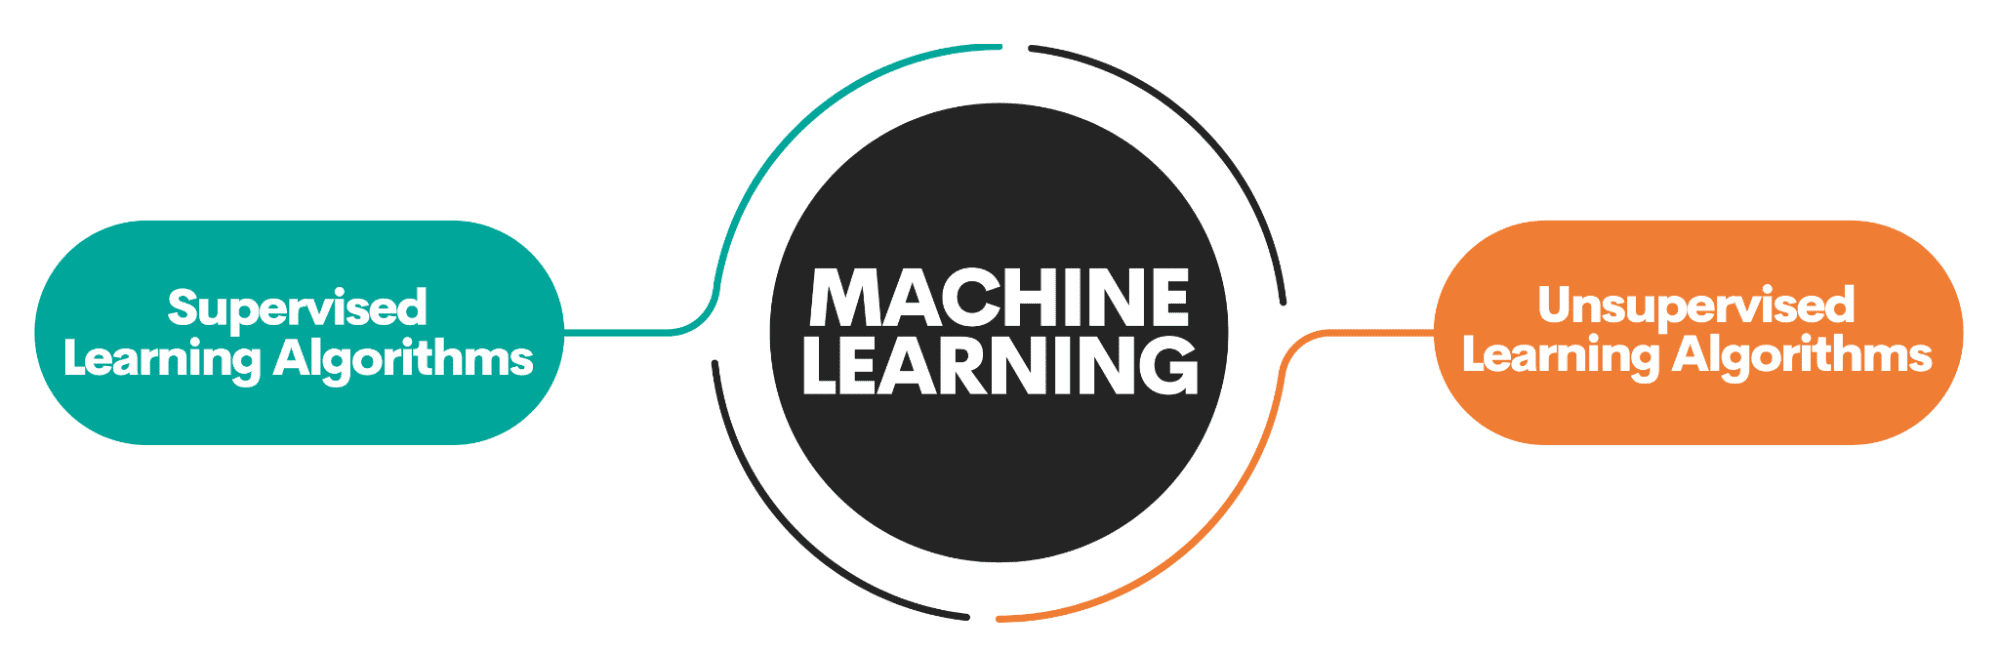 دليل المبتدئين لأفضل 10 خوارزميات للتعلم الآلي